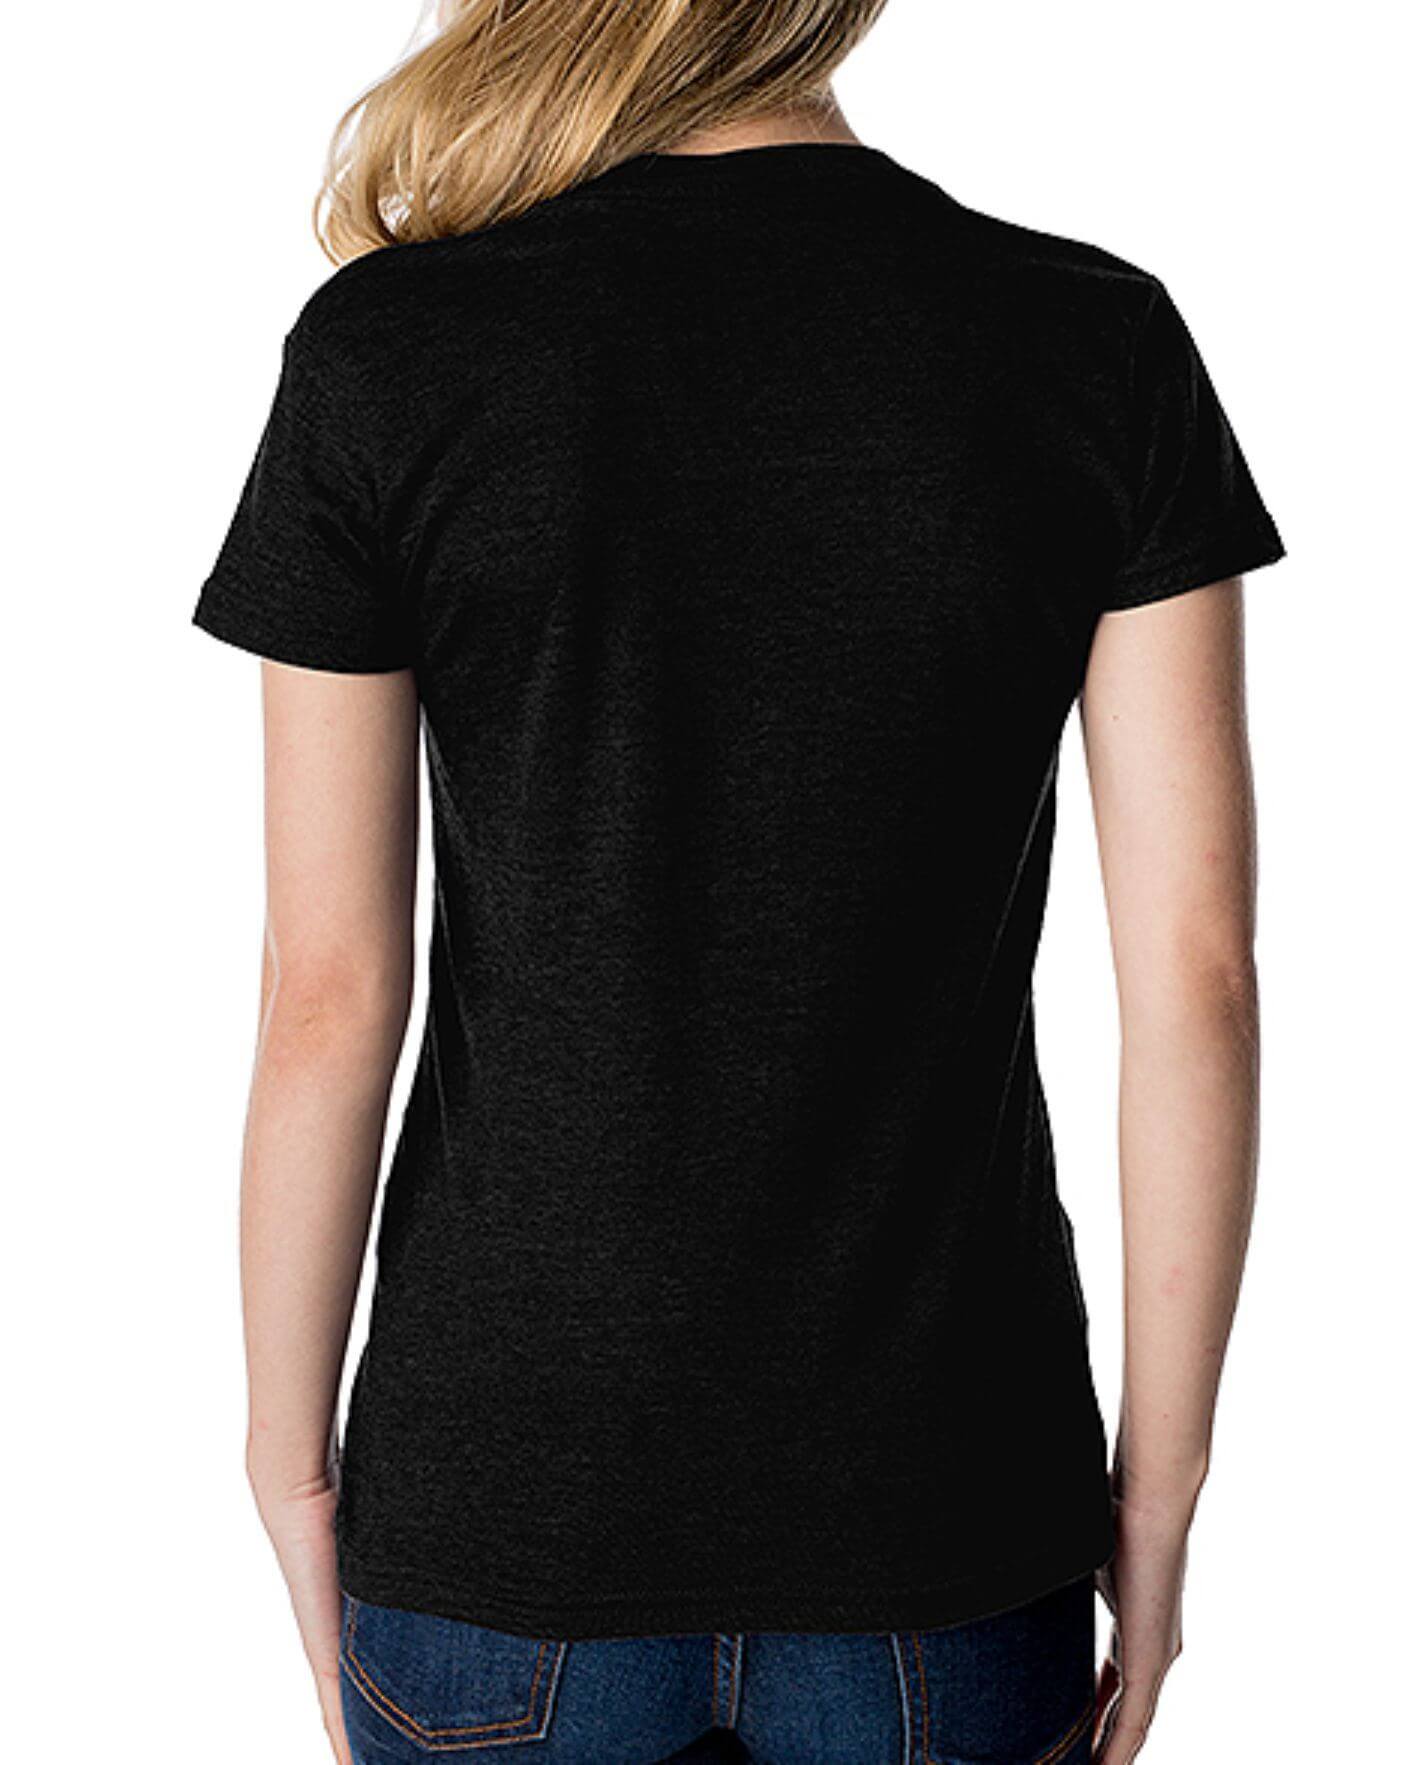 Camiseta básica de manga corta con cuello en V para mujer